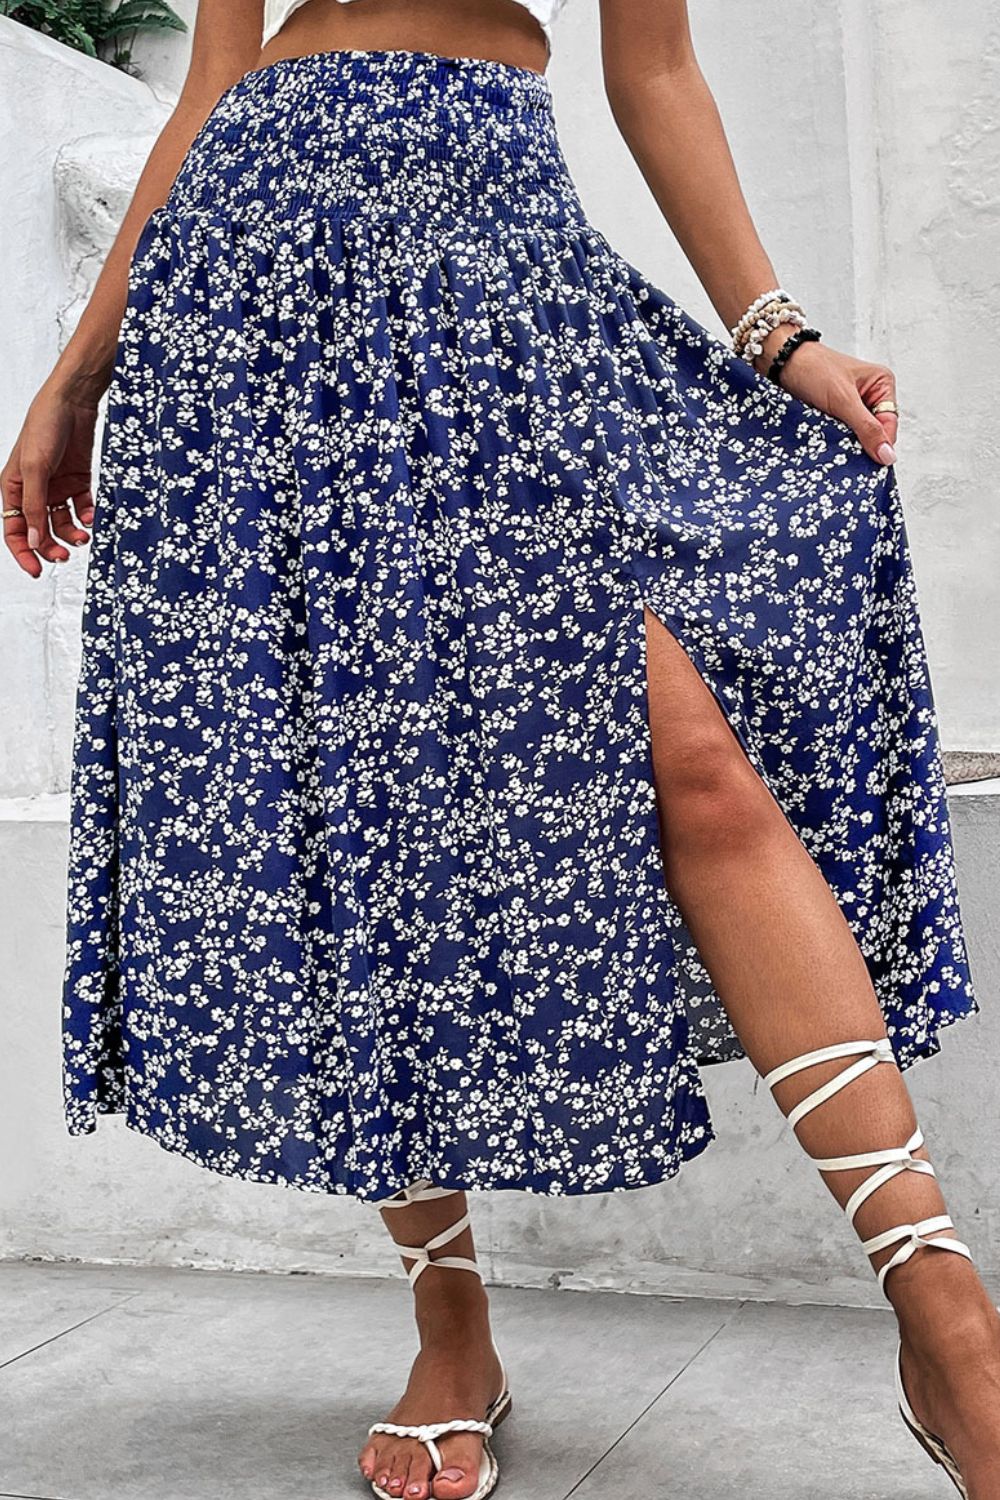 Ditsy Floral Slit High Waist Skirt-Skirt-Floral Skirt, Hundredth, Patterned Skirt, Ship From Overseas, Skirt-Floral-S-[option4]-[option5]-[option6]-Womens-USA-Clothing-Boutique-Shop-Online-Clothes Minded